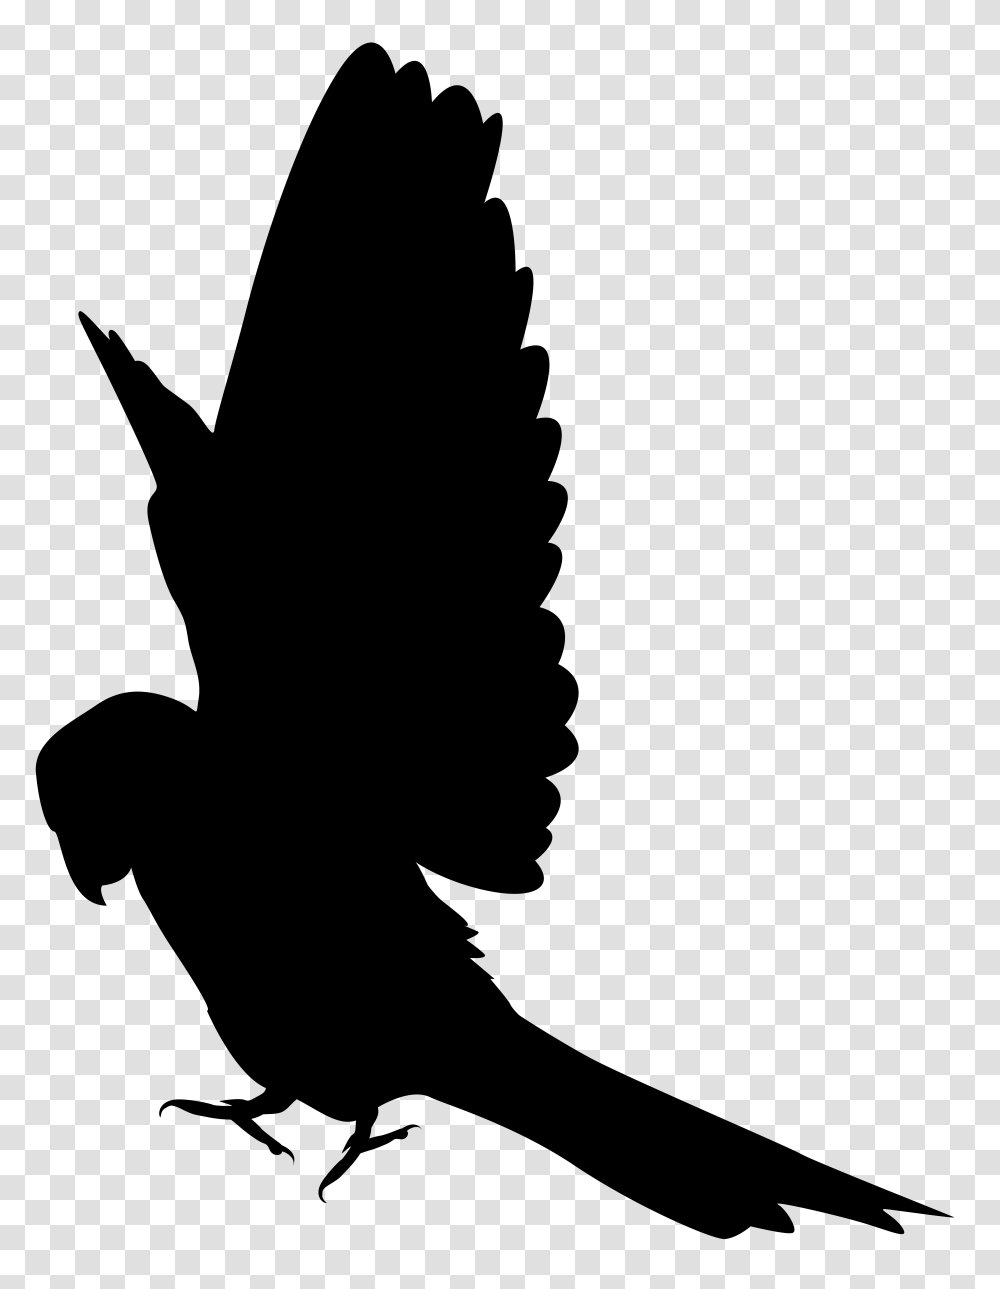 Parrot Silhouette Clip Art, Logo Transparent Png